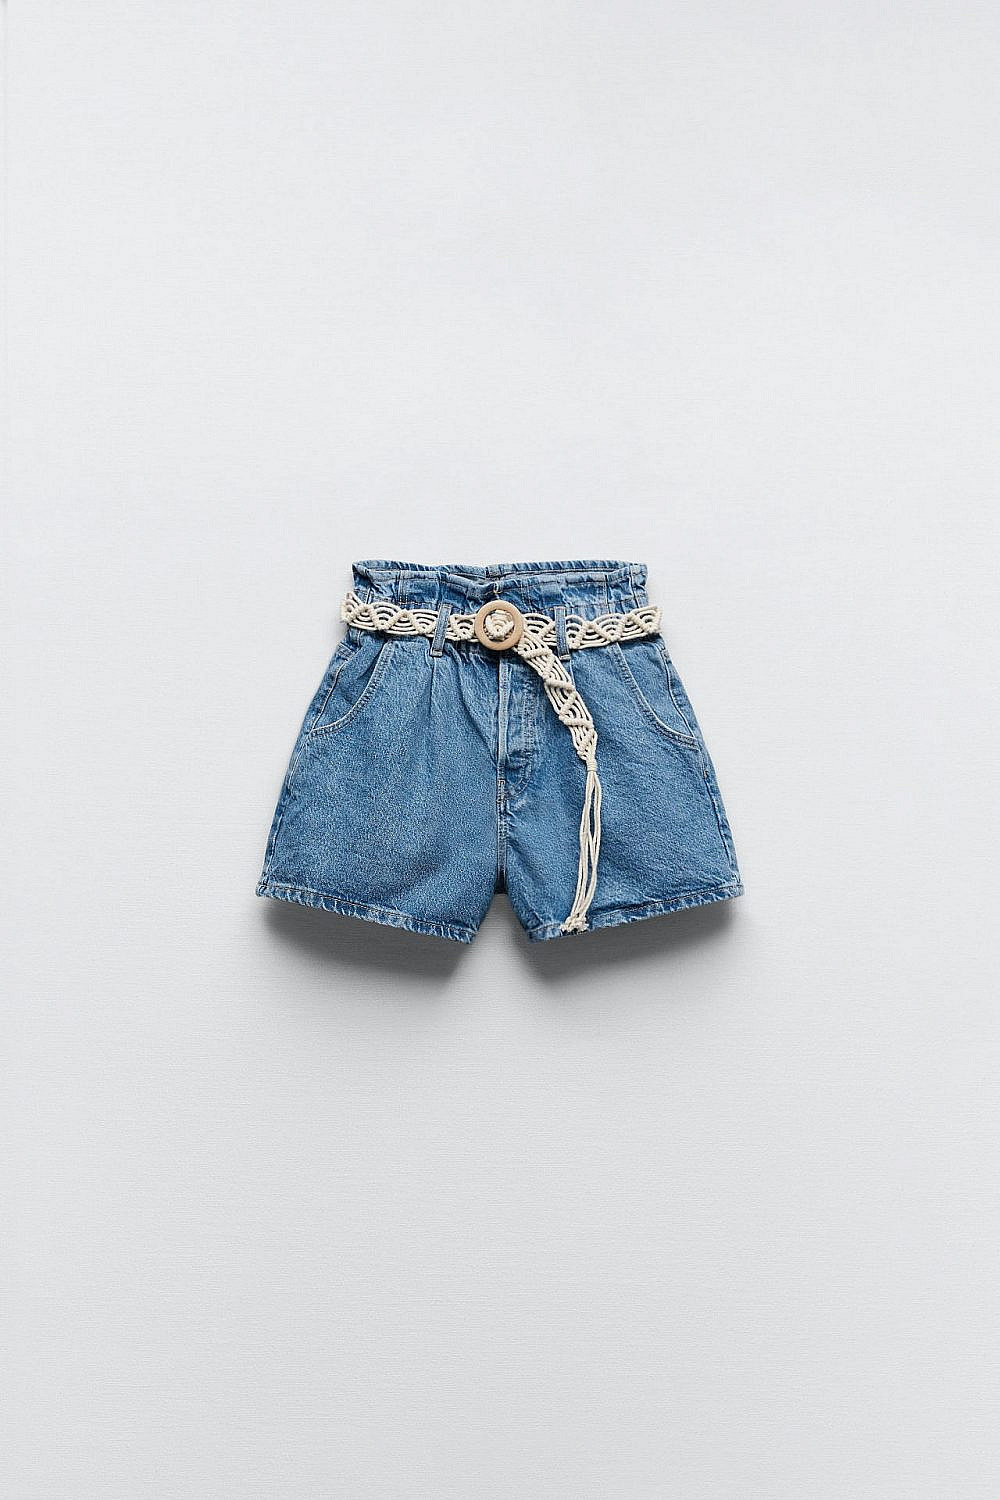 מכנסיים קצרים מג׳ינס עם חגורה של זארה, קיץ 2022. 169.90 ש״ח| צילום: האתר הרשמי